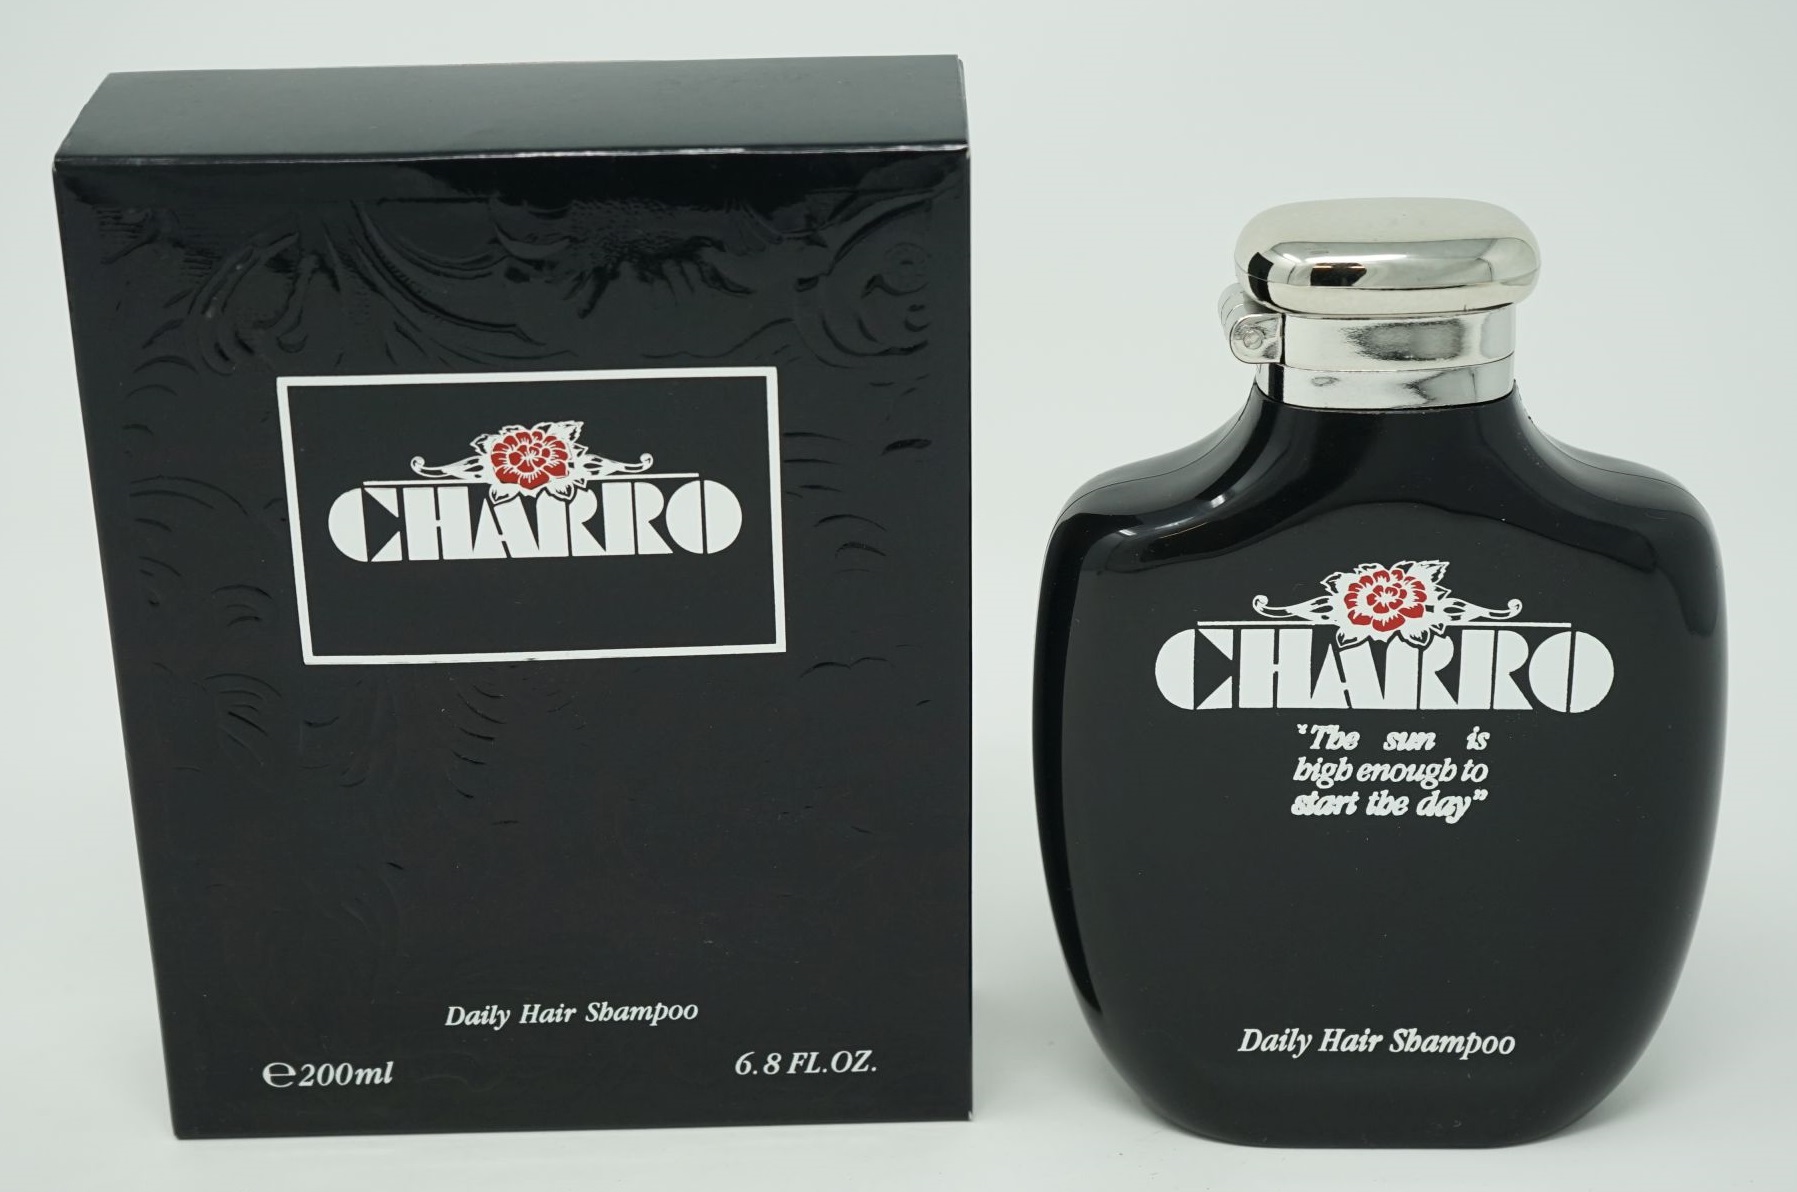 Charro Daily Hair Shampoo 200ml